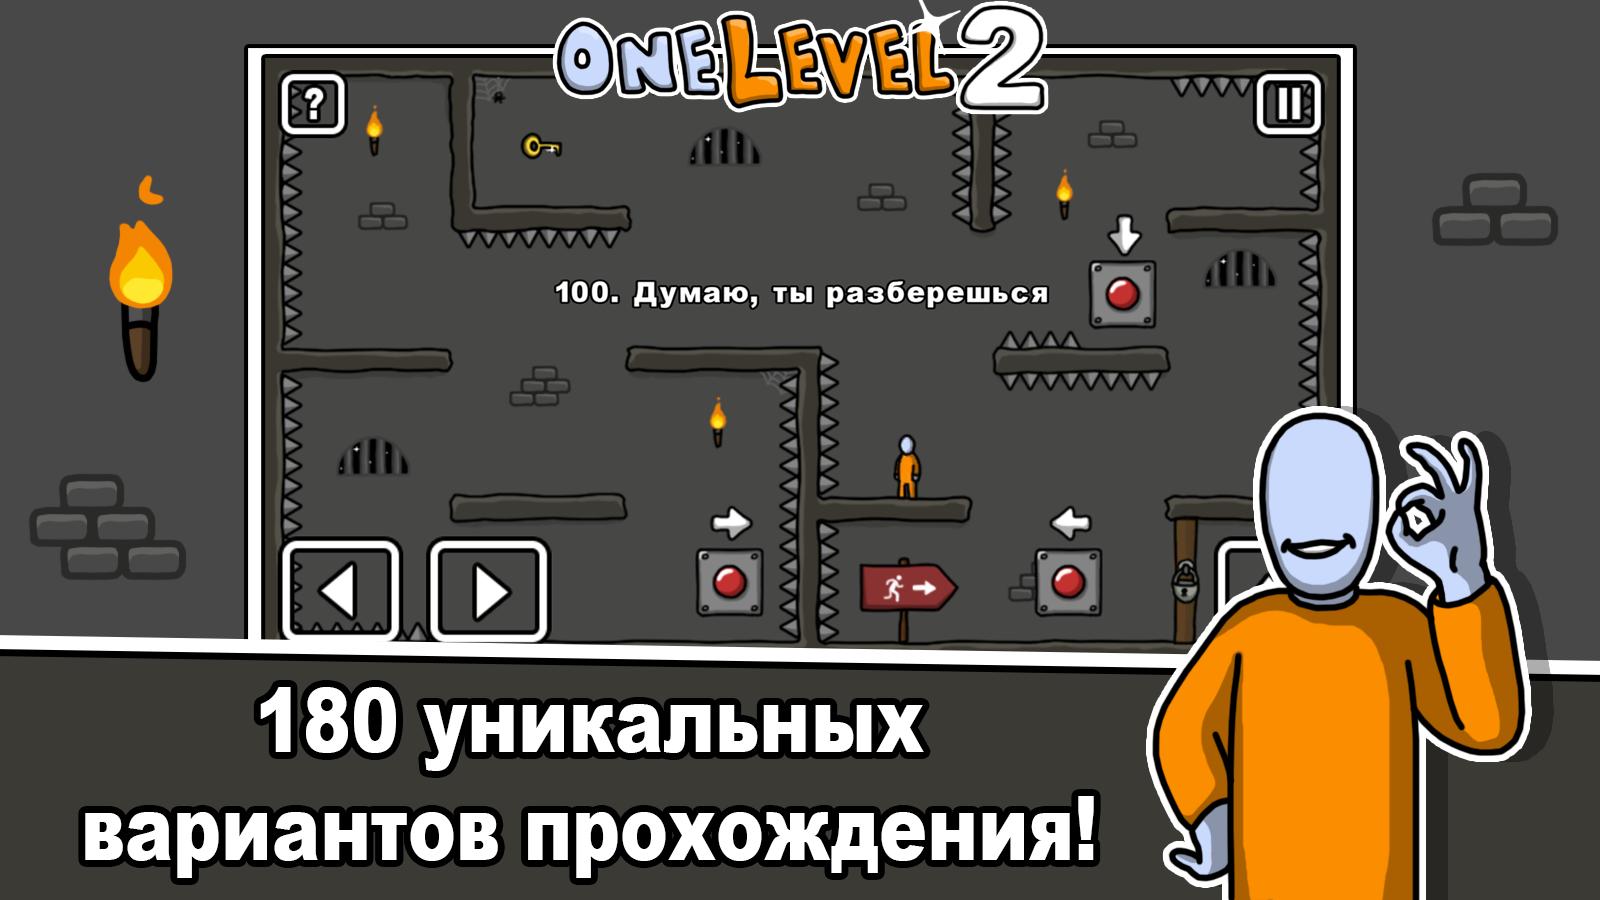 One Level 2 Stikmen Pobeg Iz Tyurmy Dlya Android Skachat Apk